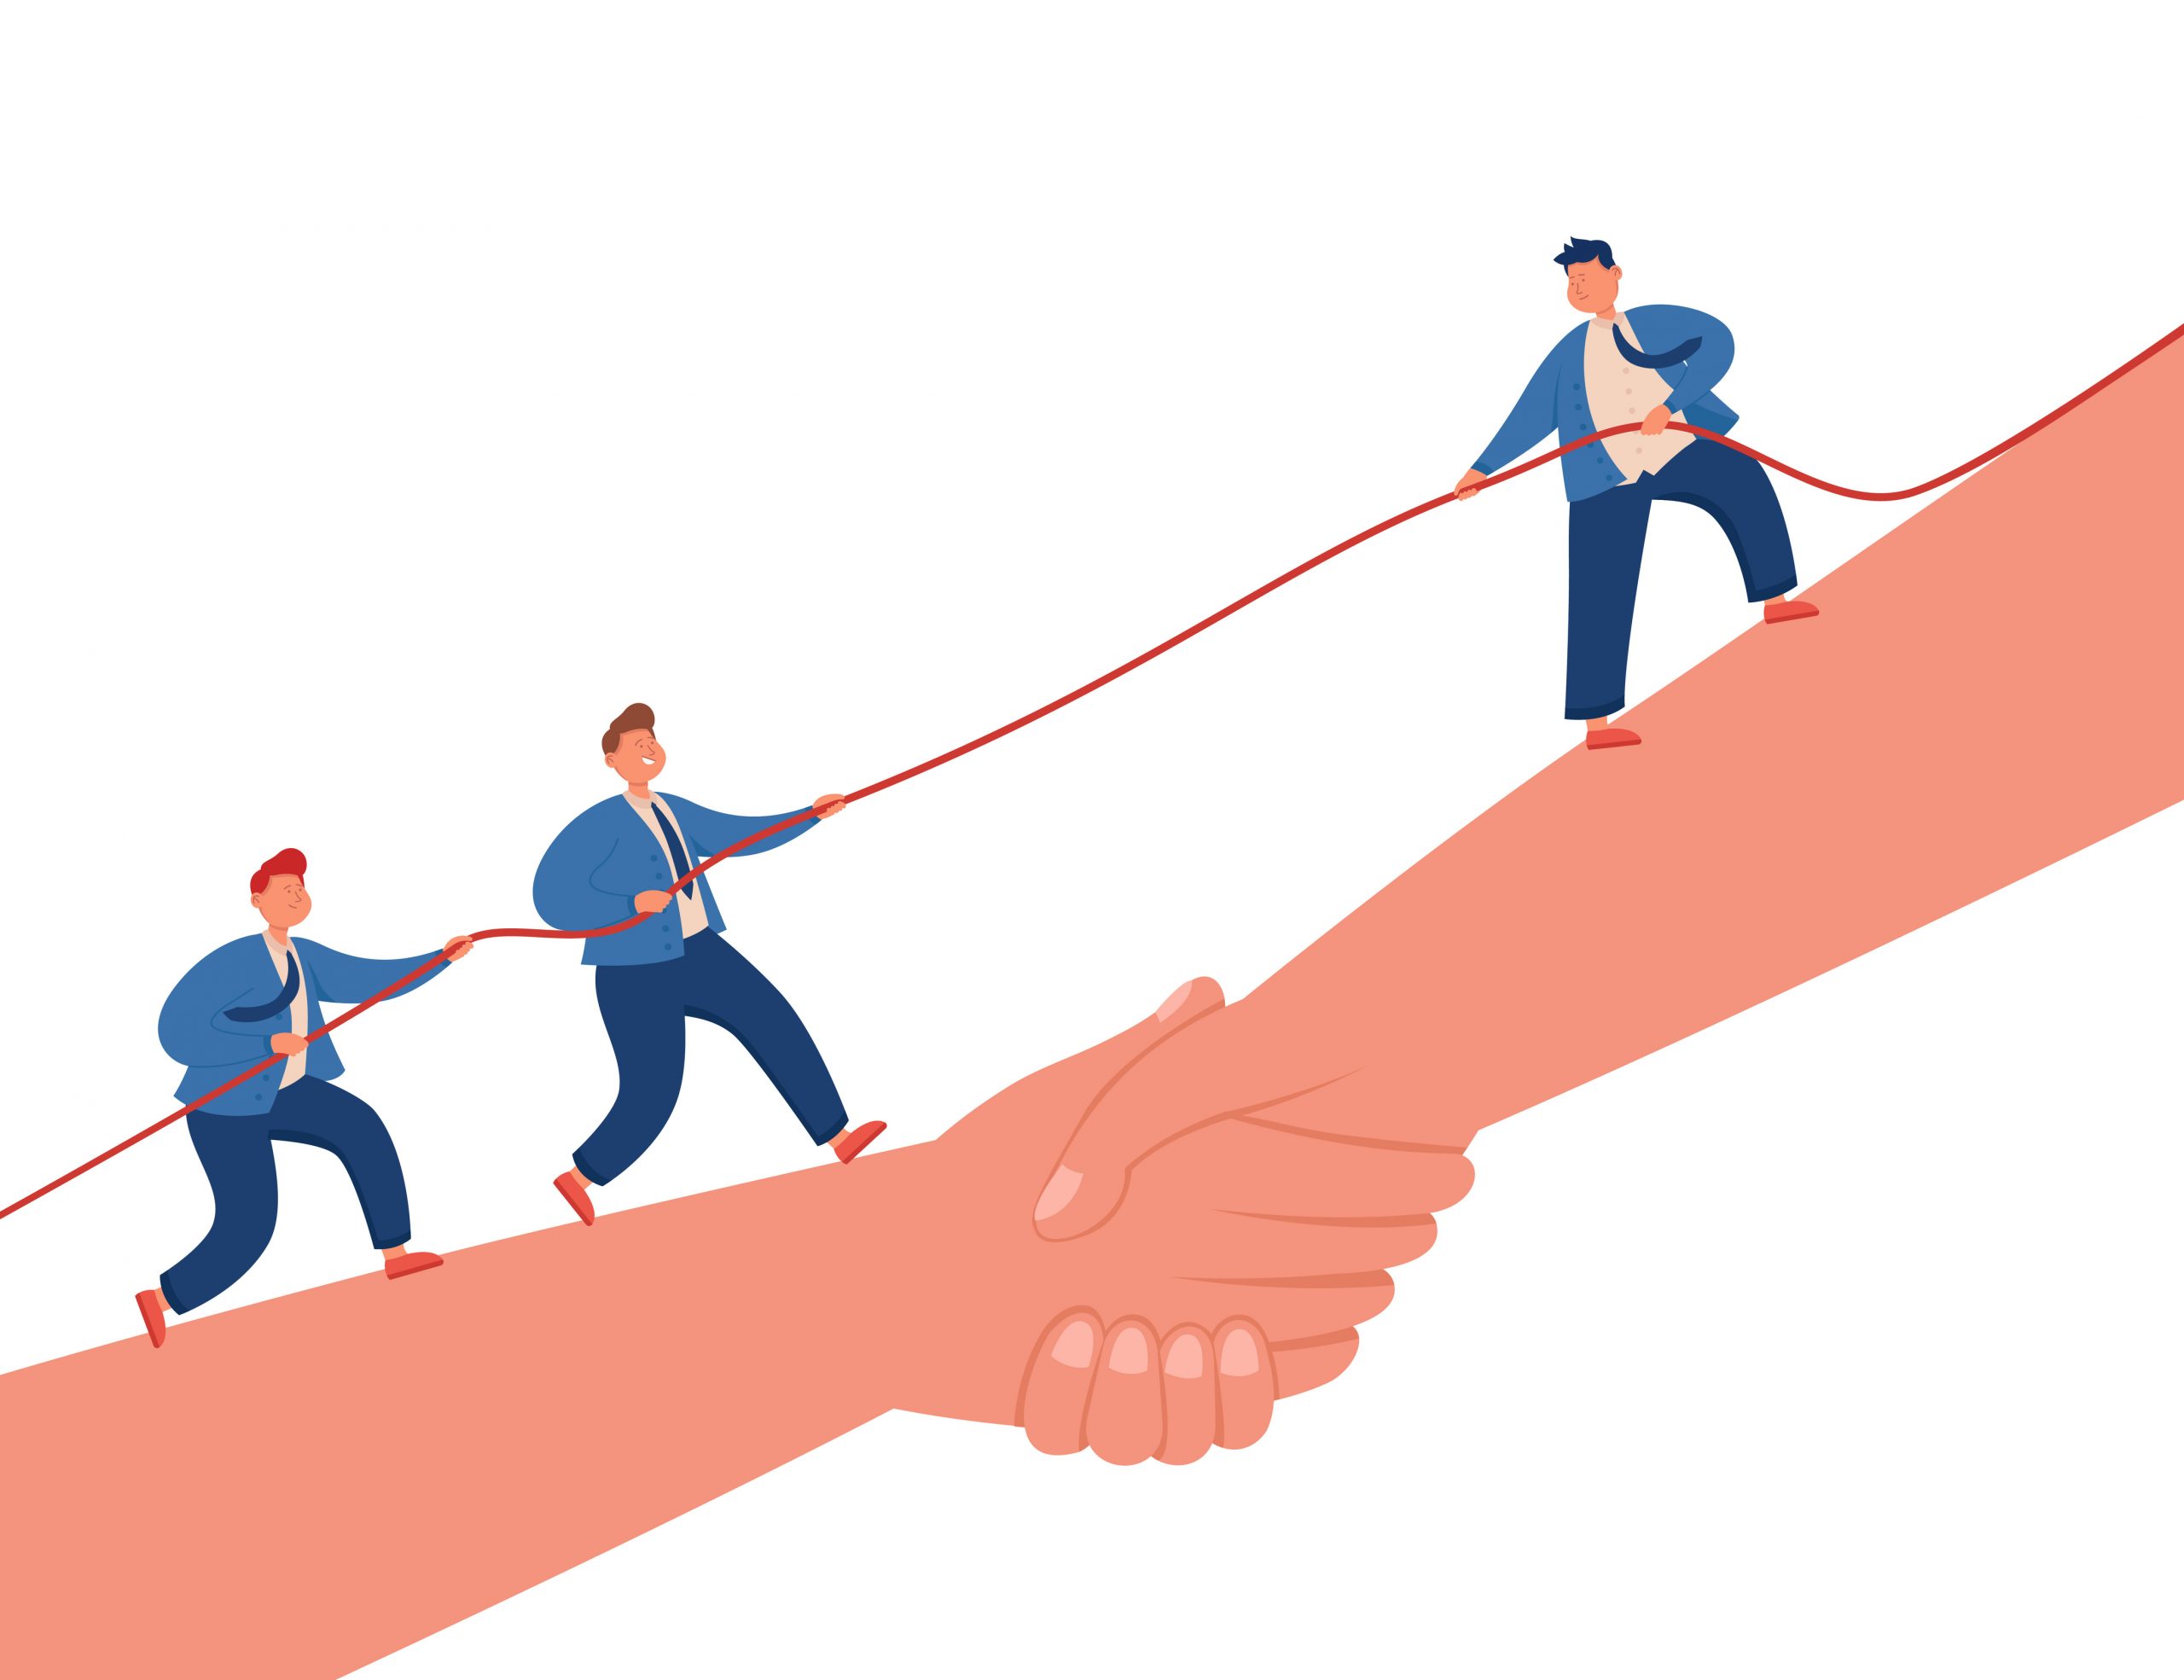 Liderança: como liderar sua equipe de maneira eficaz e motivá-los a trabalhar juntos em direção aos objetivos da empresa